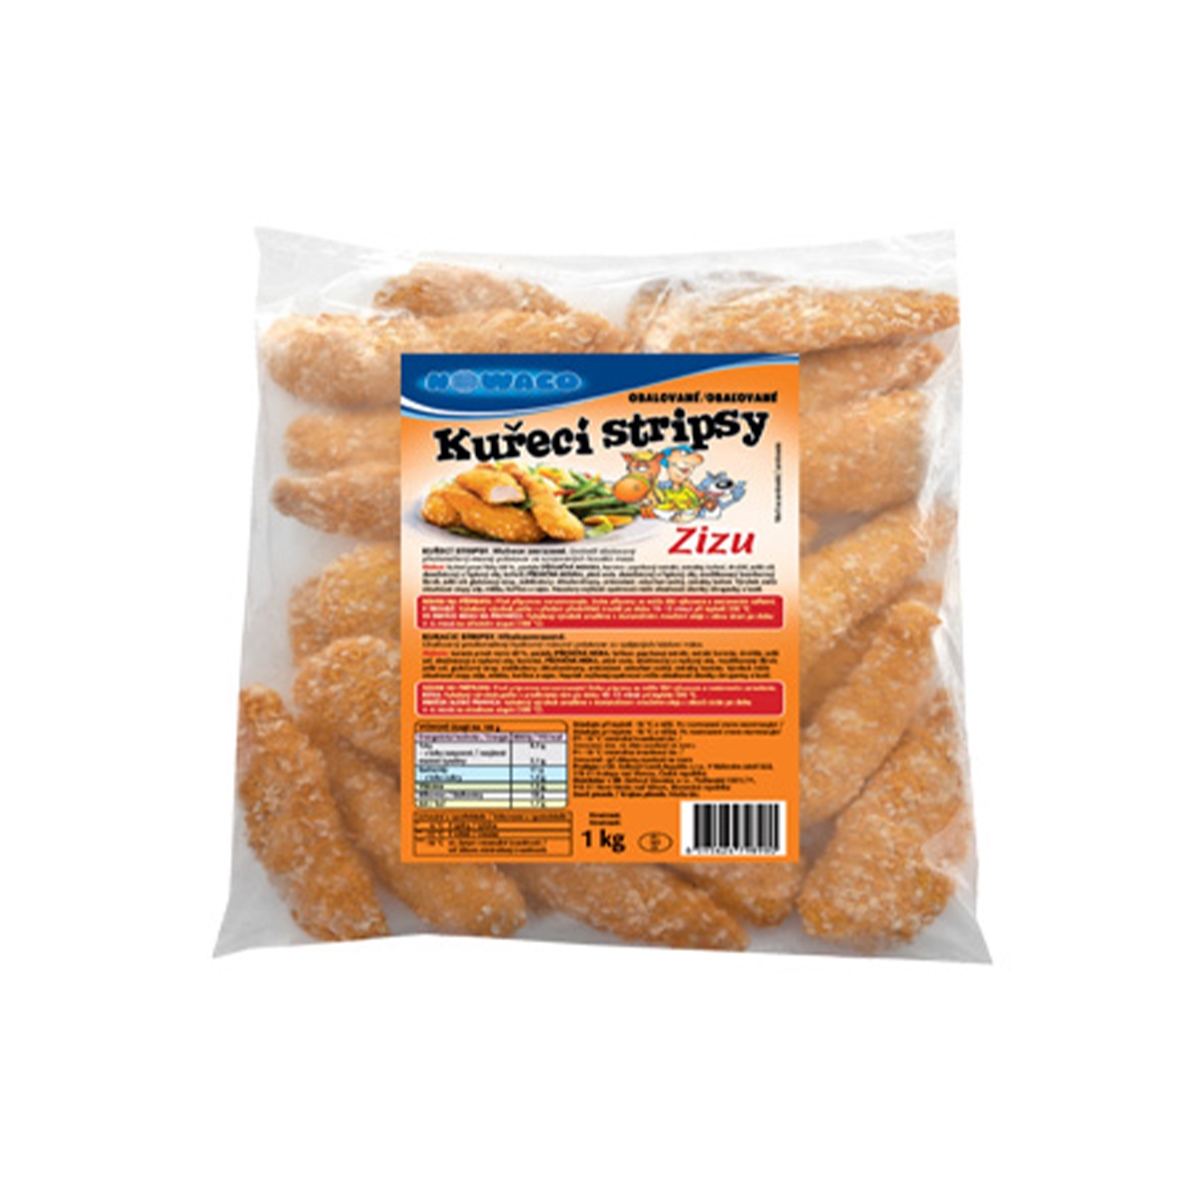 Zizu obalované kuřecí stripsy Bidfood 1 kg